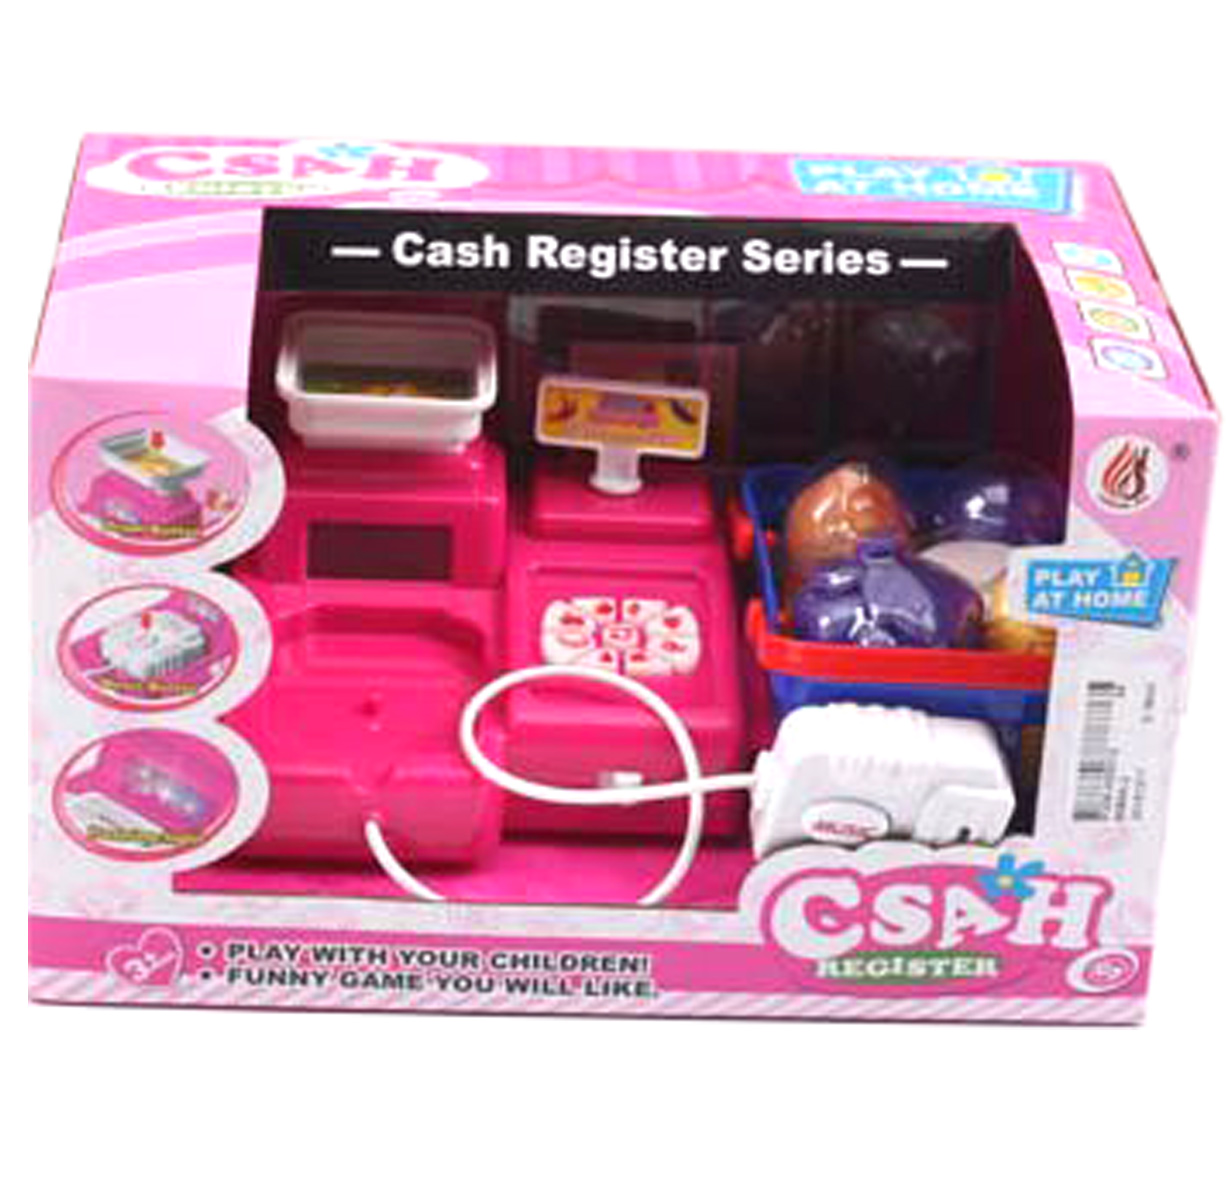 Іграшковий касовий апарат CASH